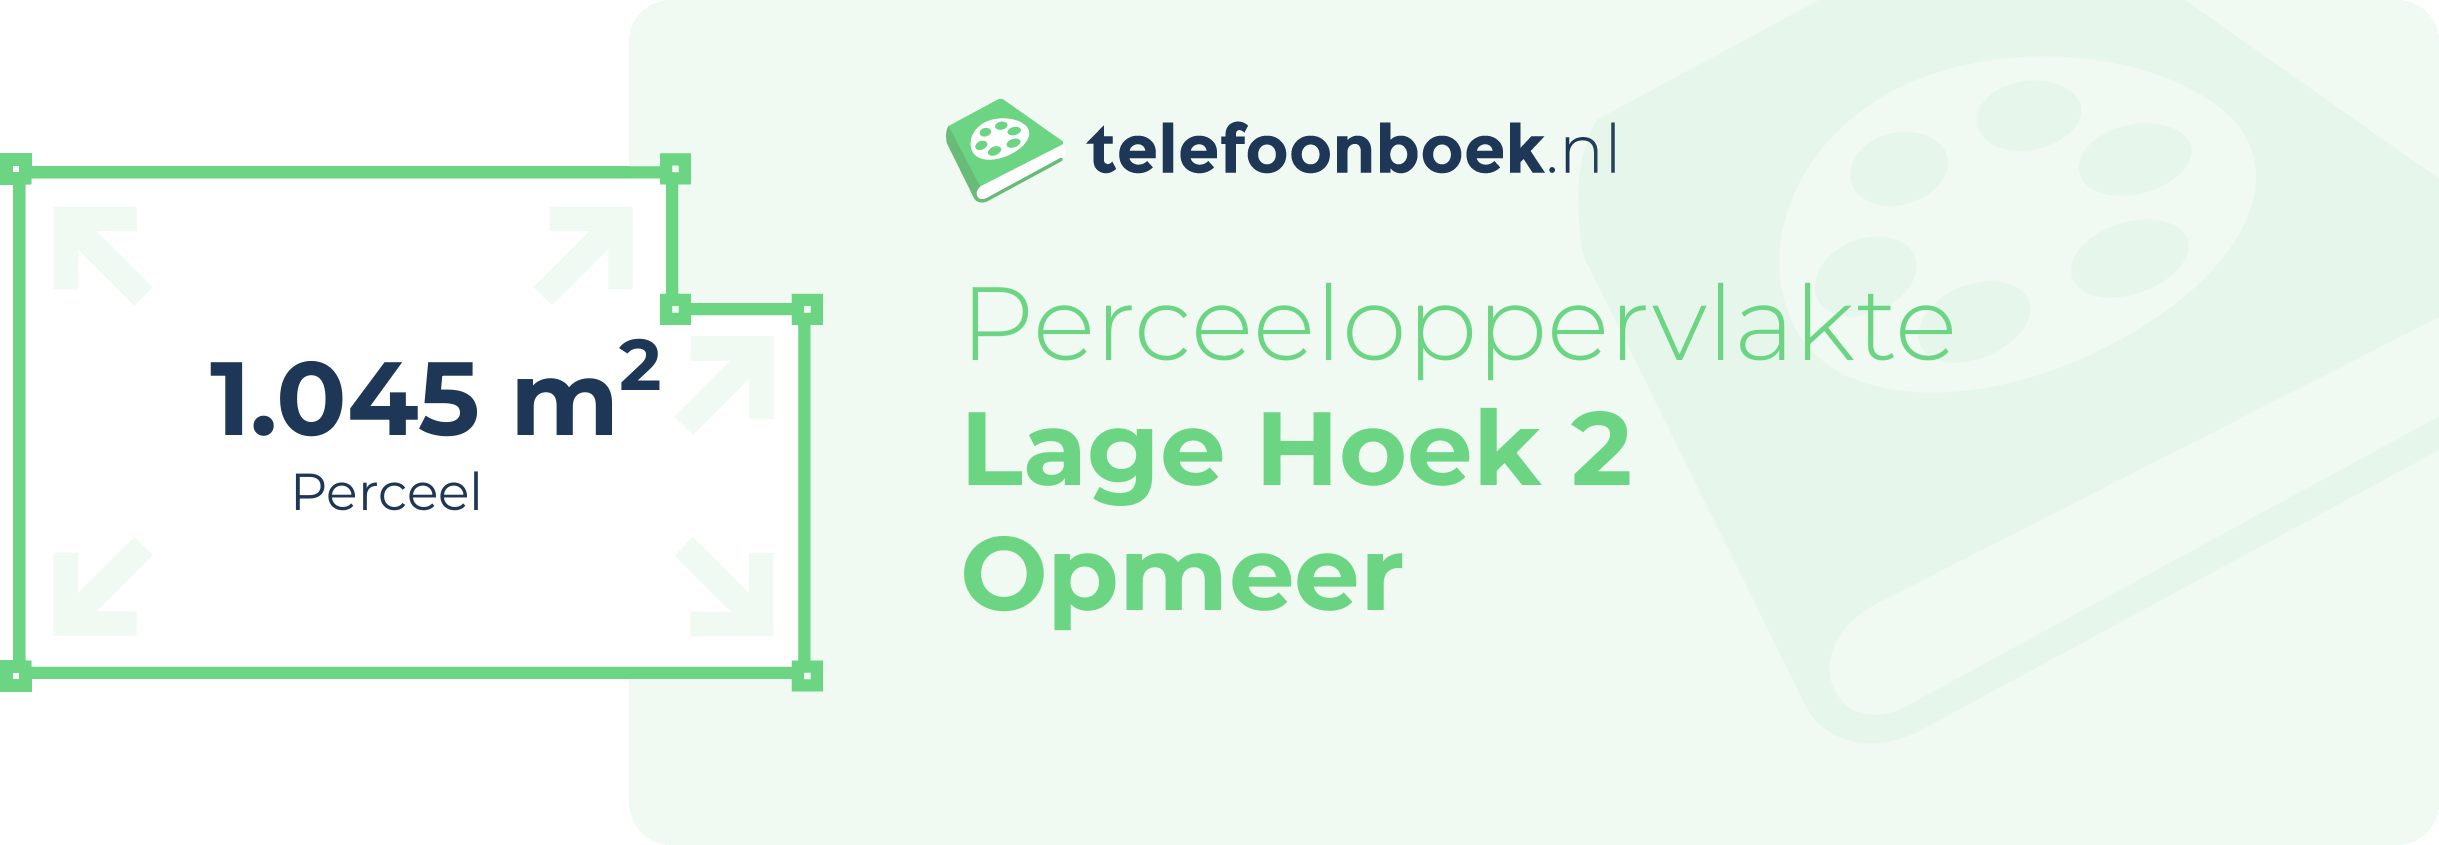 Perceeloppervlakte Lage Hoek 2 Opmeer